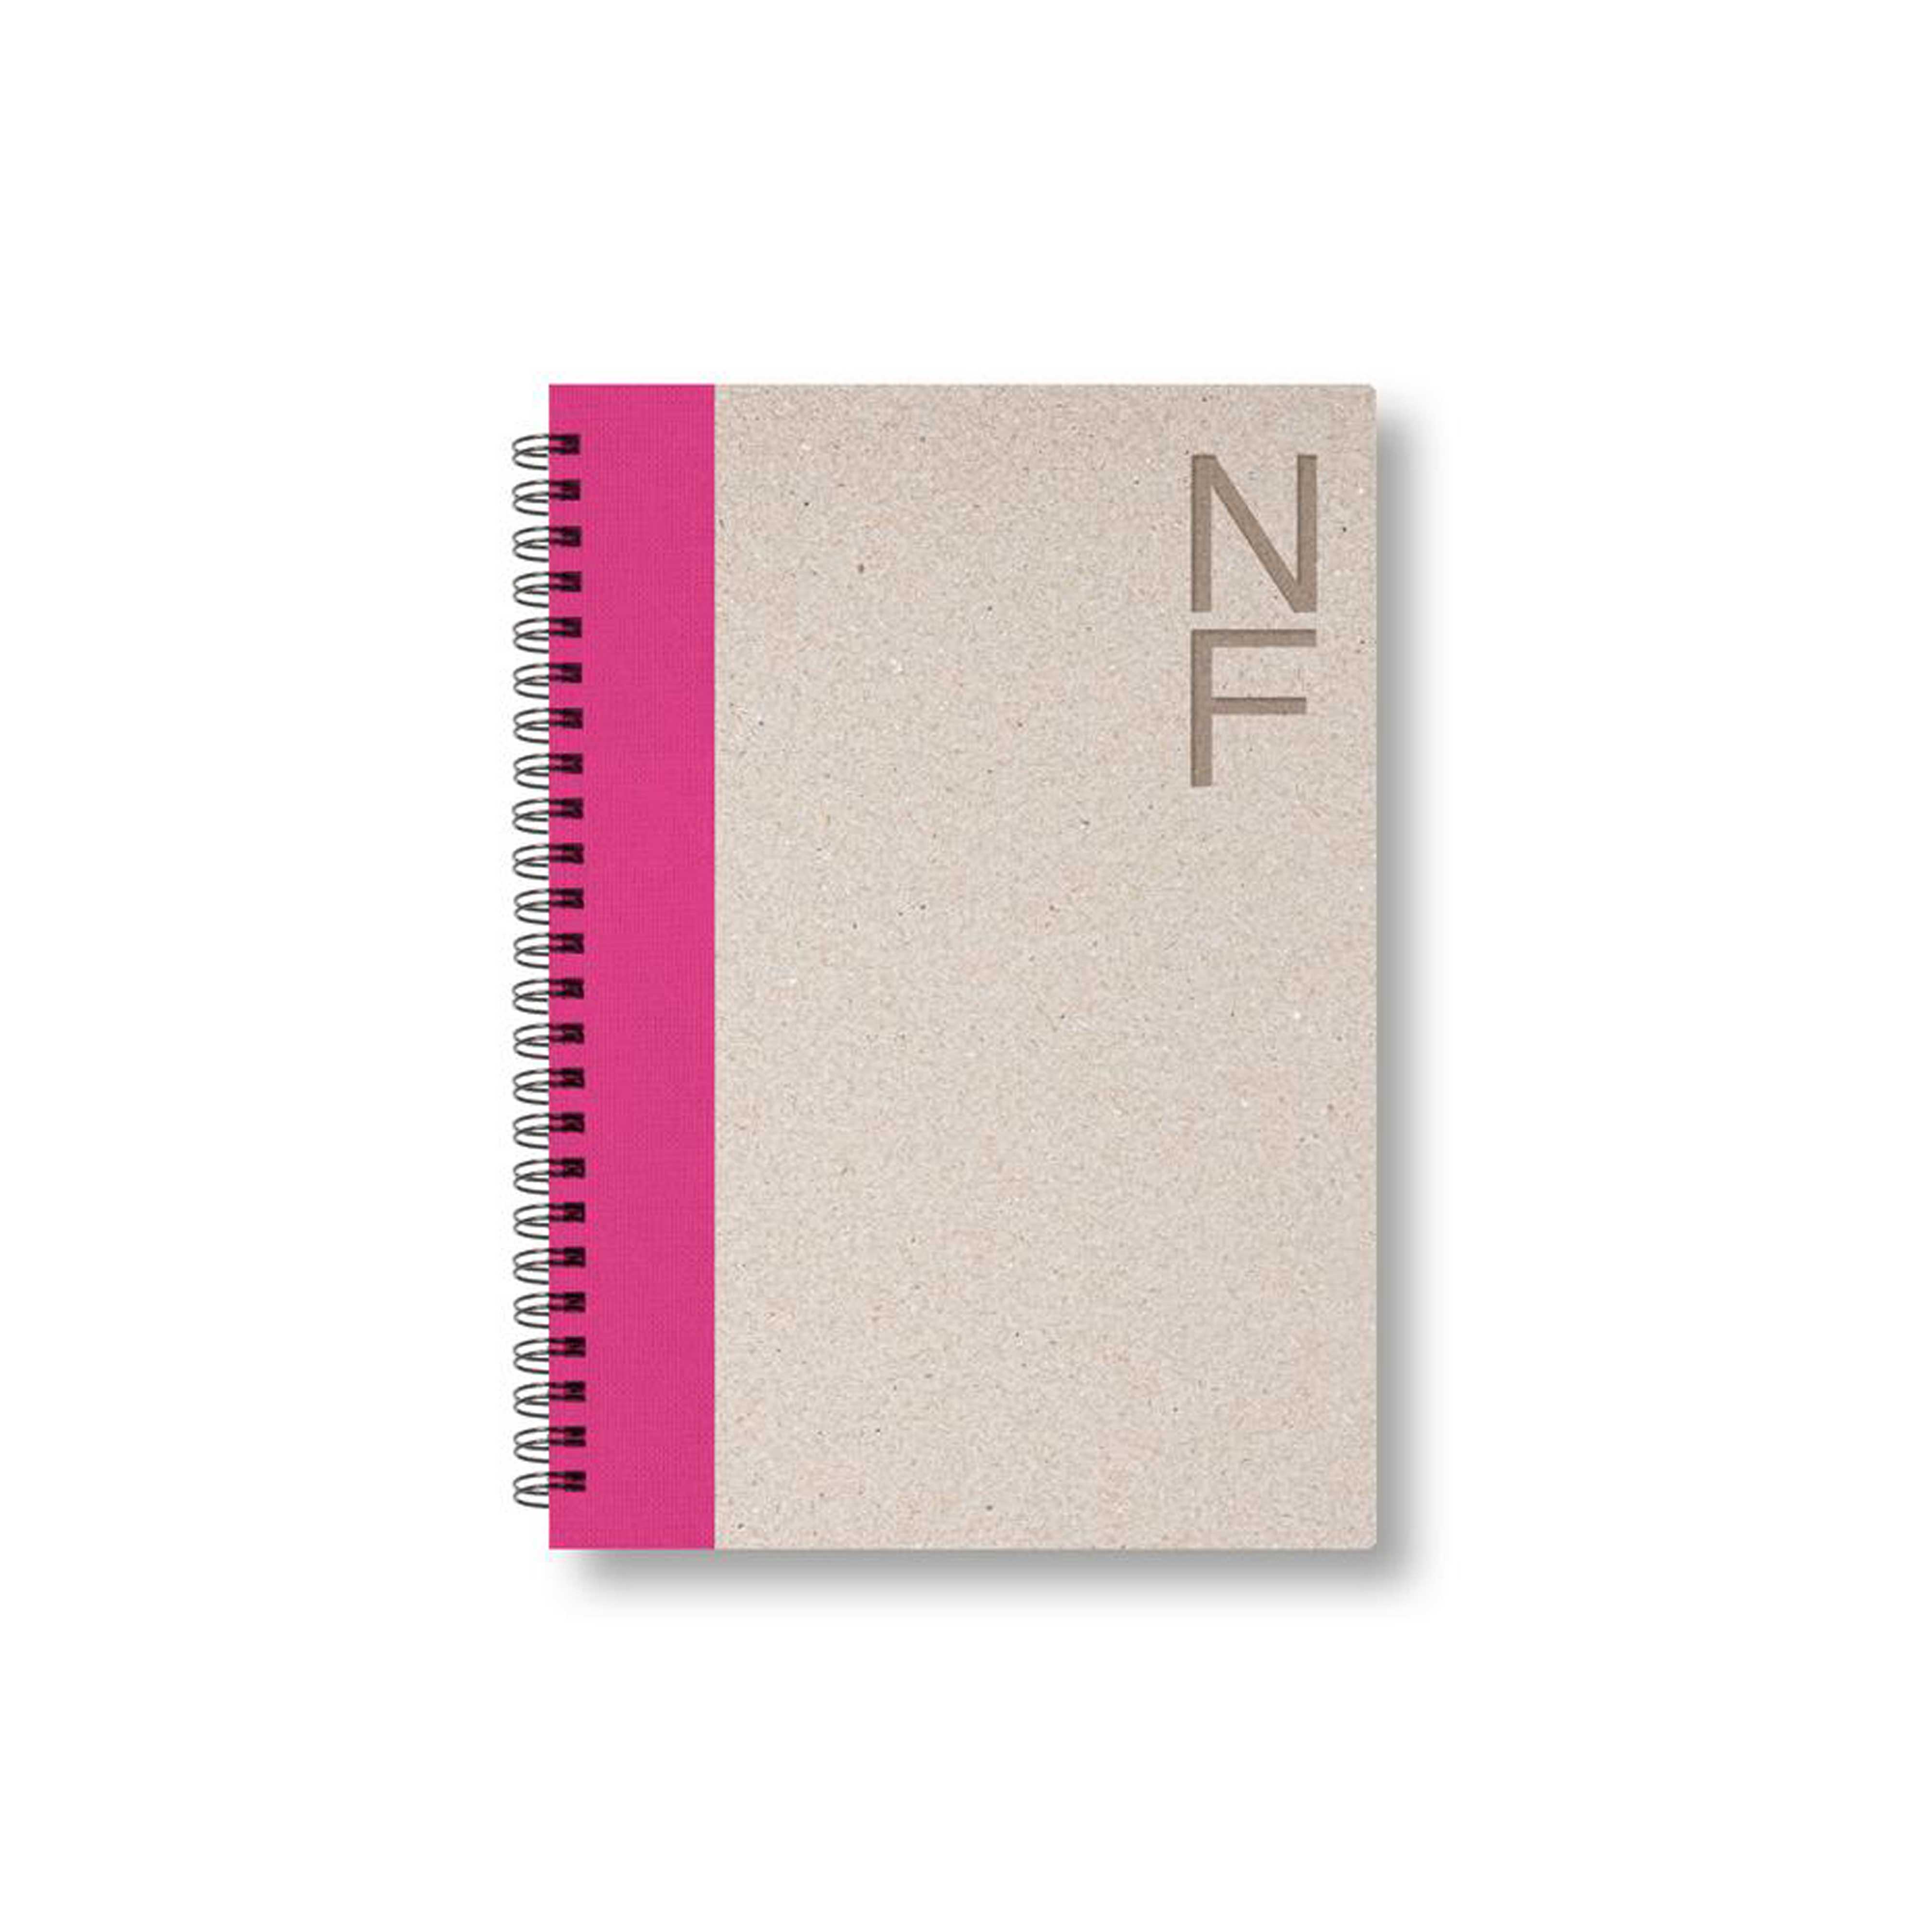 BOBO Zápisník, B6, čistý, růžový, konfiguruj si obálku